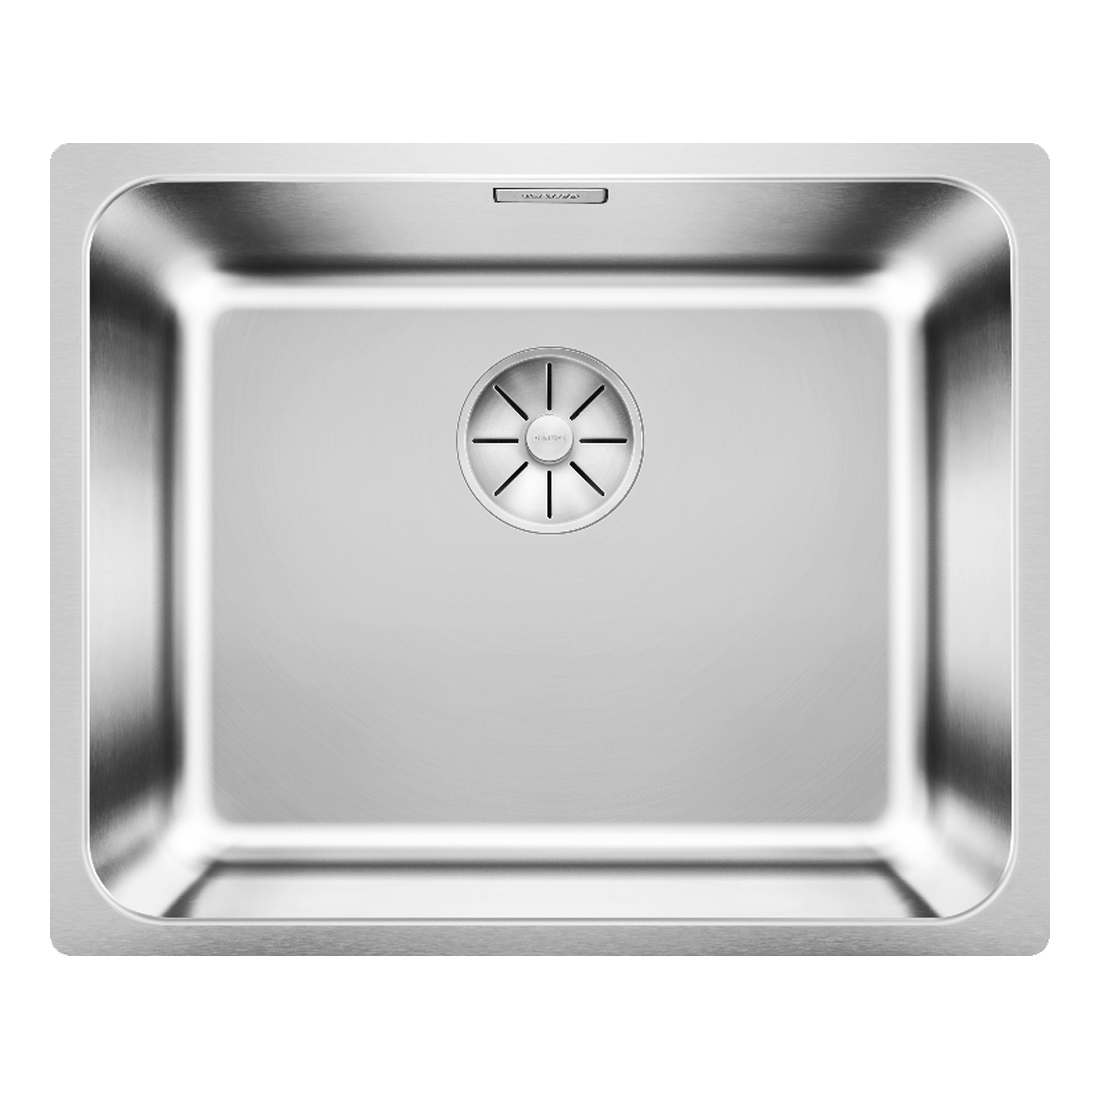 Кухонная мойка Blanco Solis 500-U полированная сталь кухонная мойка franke 101 0689 948 нержавеющая сталь